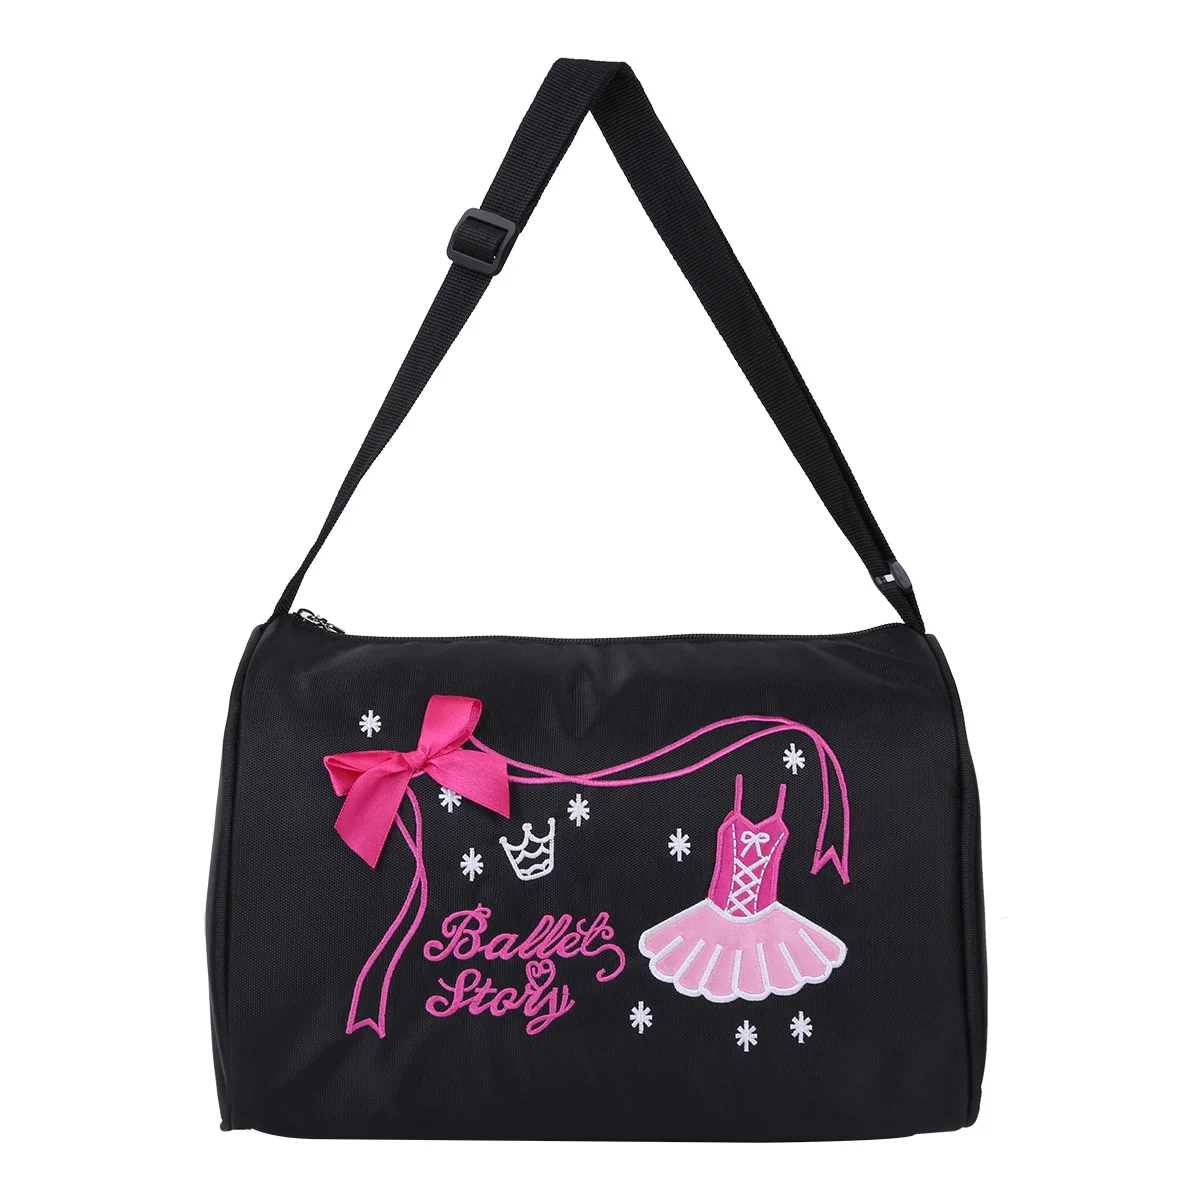 TiaoBug модные детские сумки для балерины, балета, танцев для девочек, ручная сумка для школы, спортзала, спорта, танцев, сумка через плечо, спортивная сумка на молнии - Цвет: Black